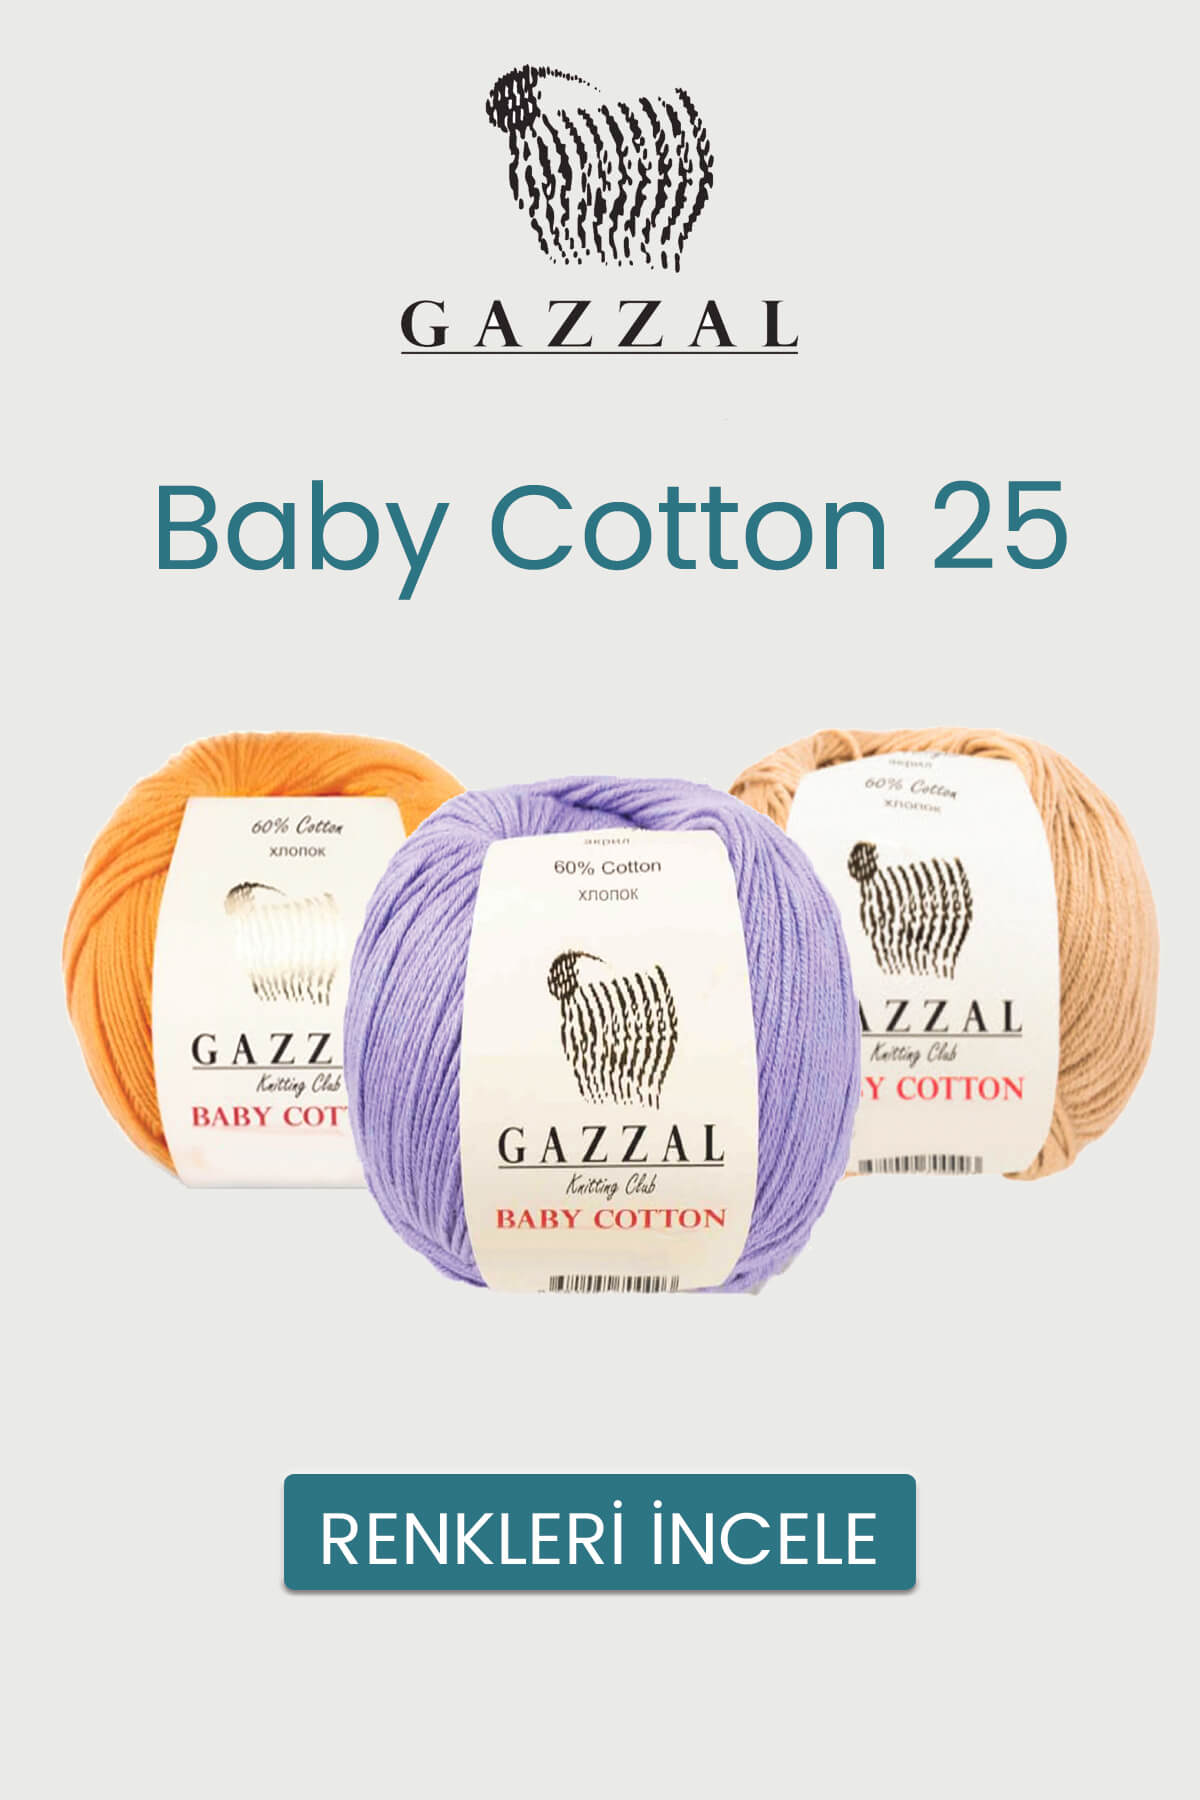 gazzal-baby-cotton-25-tekstilland